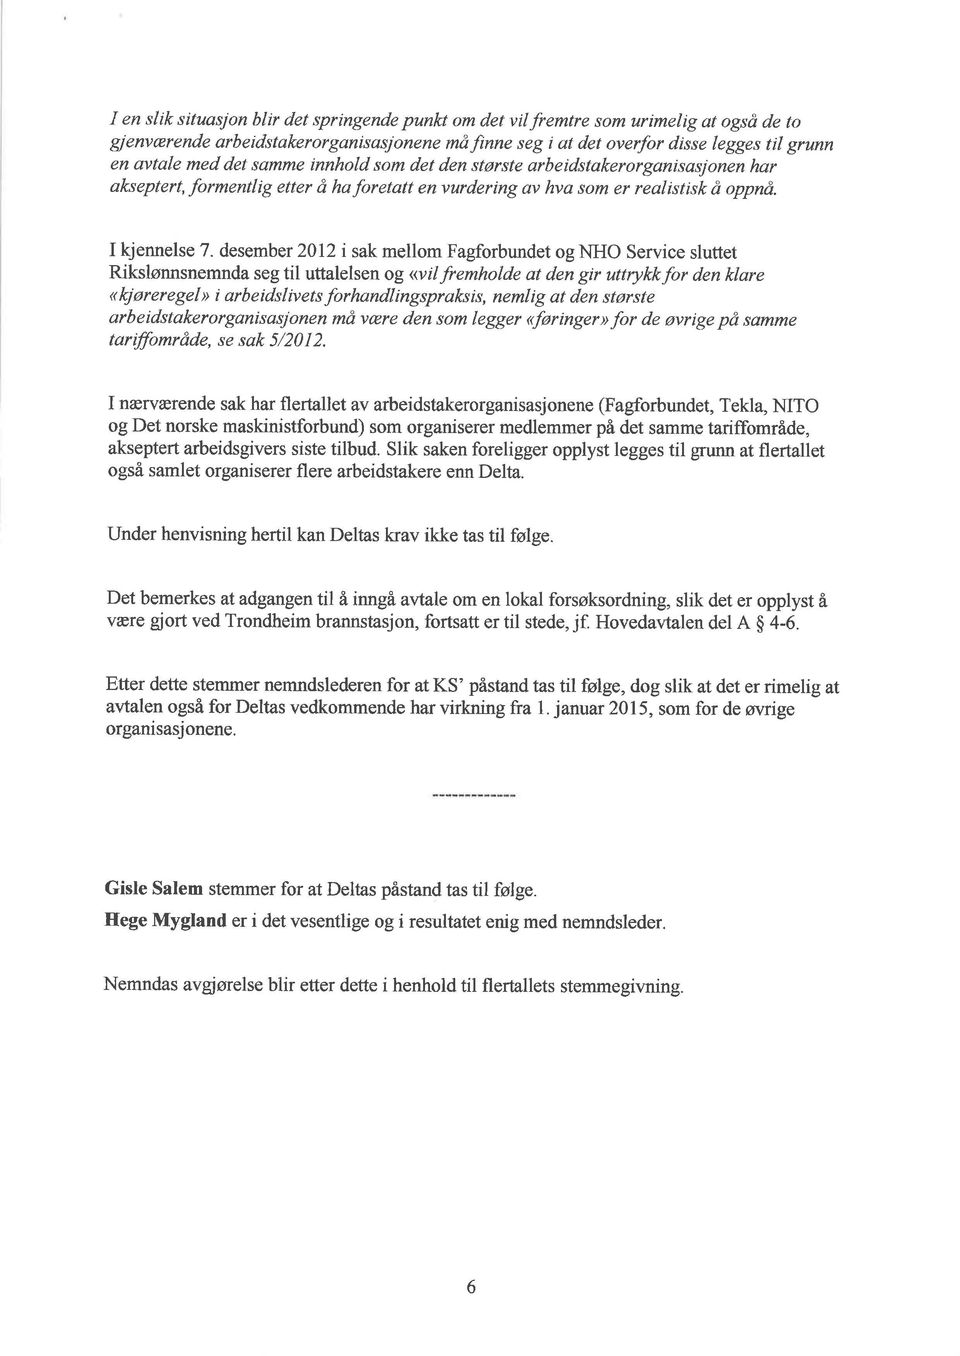 desember 2012 i sak mellom Fagforbundet ognho Service sluttet Rikslønnsnemnda seg til uttalelsen og <<vil fremholde at den gir uttrykkfor den klare <kjøreregel> i arbeidslivets forhandlingspraksis,